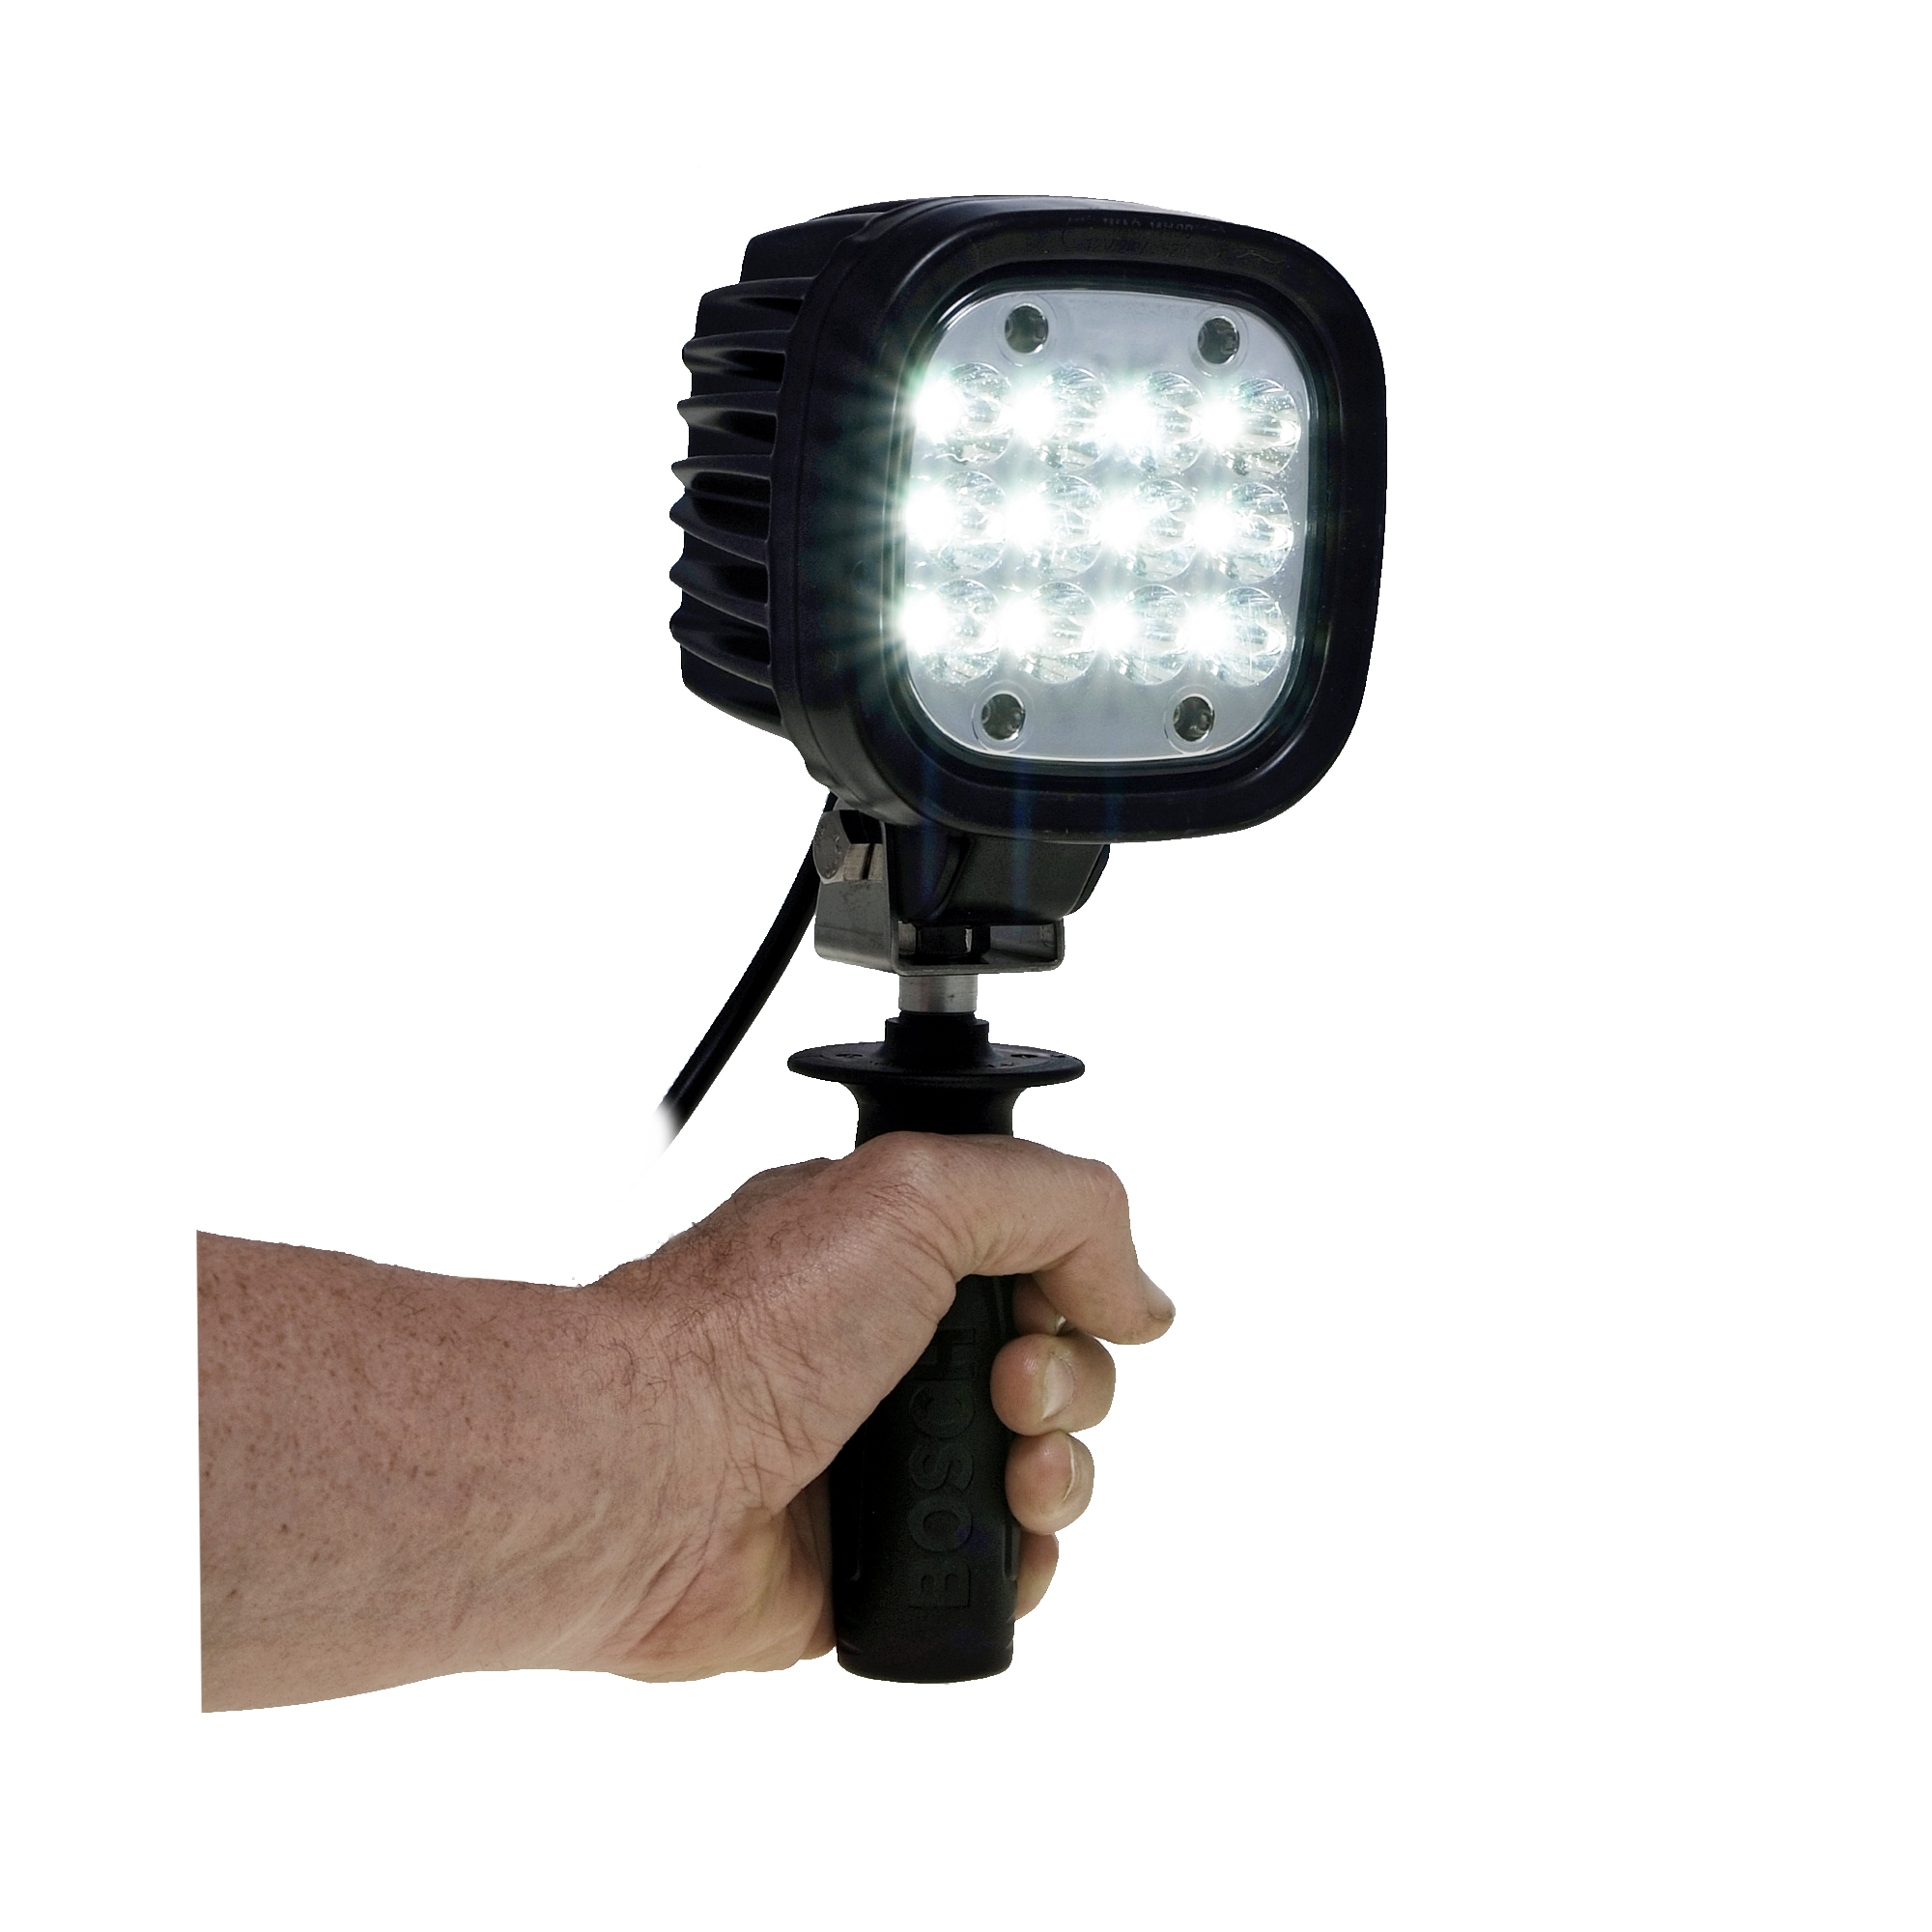 Taschenlampe - LED-Suchscheinwerfer